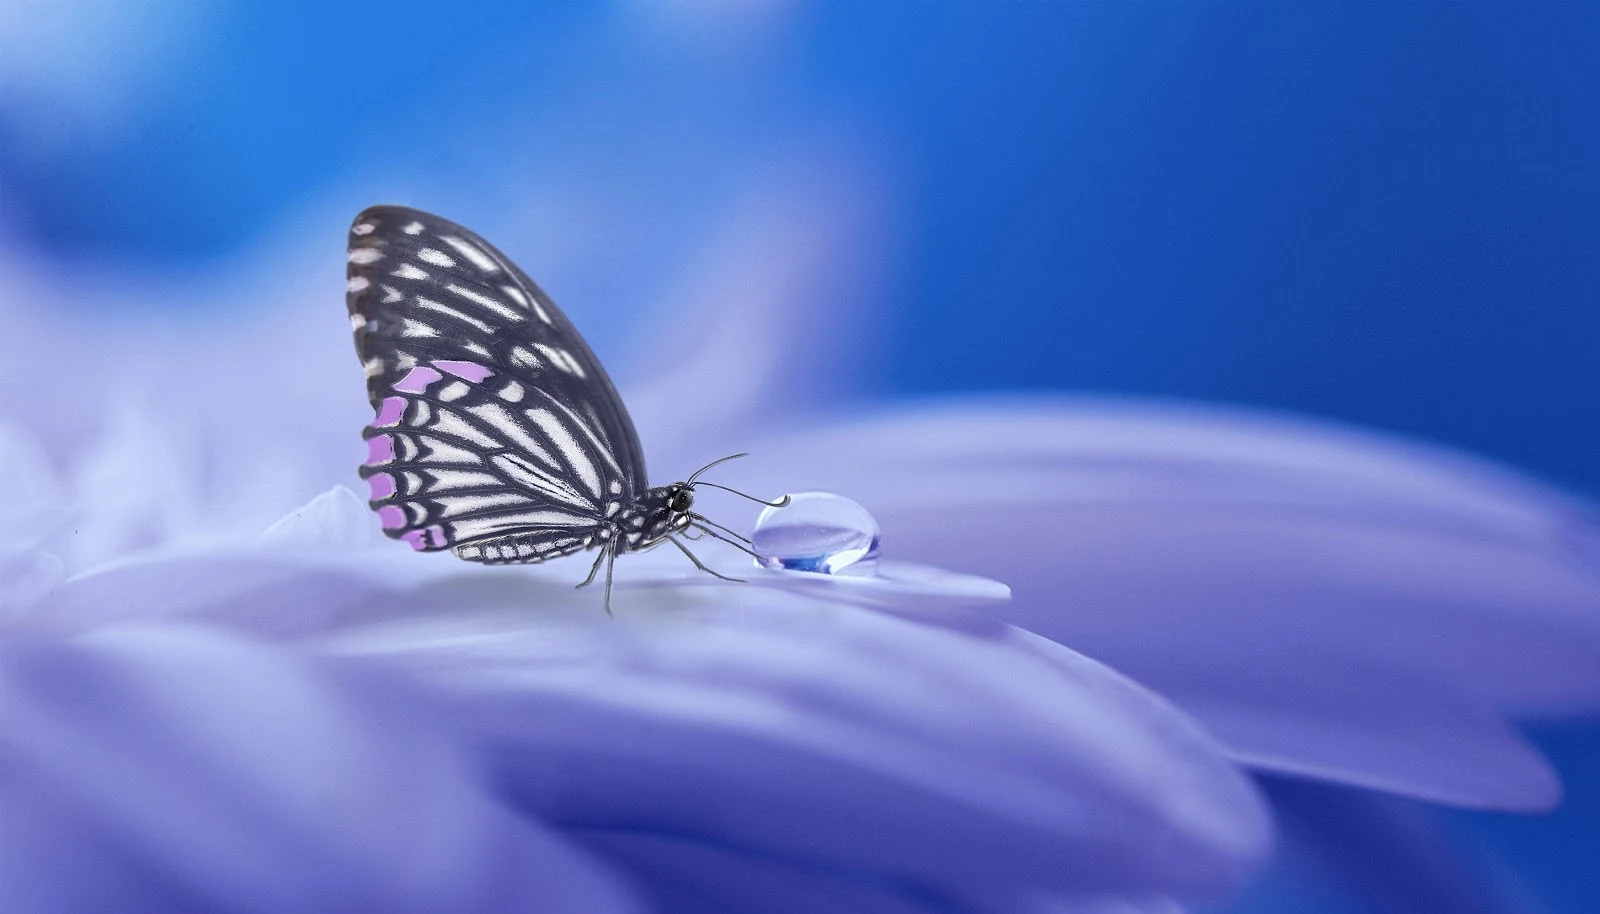 薄紫の花びらに留待って水滴を吸っている一匹の蝶